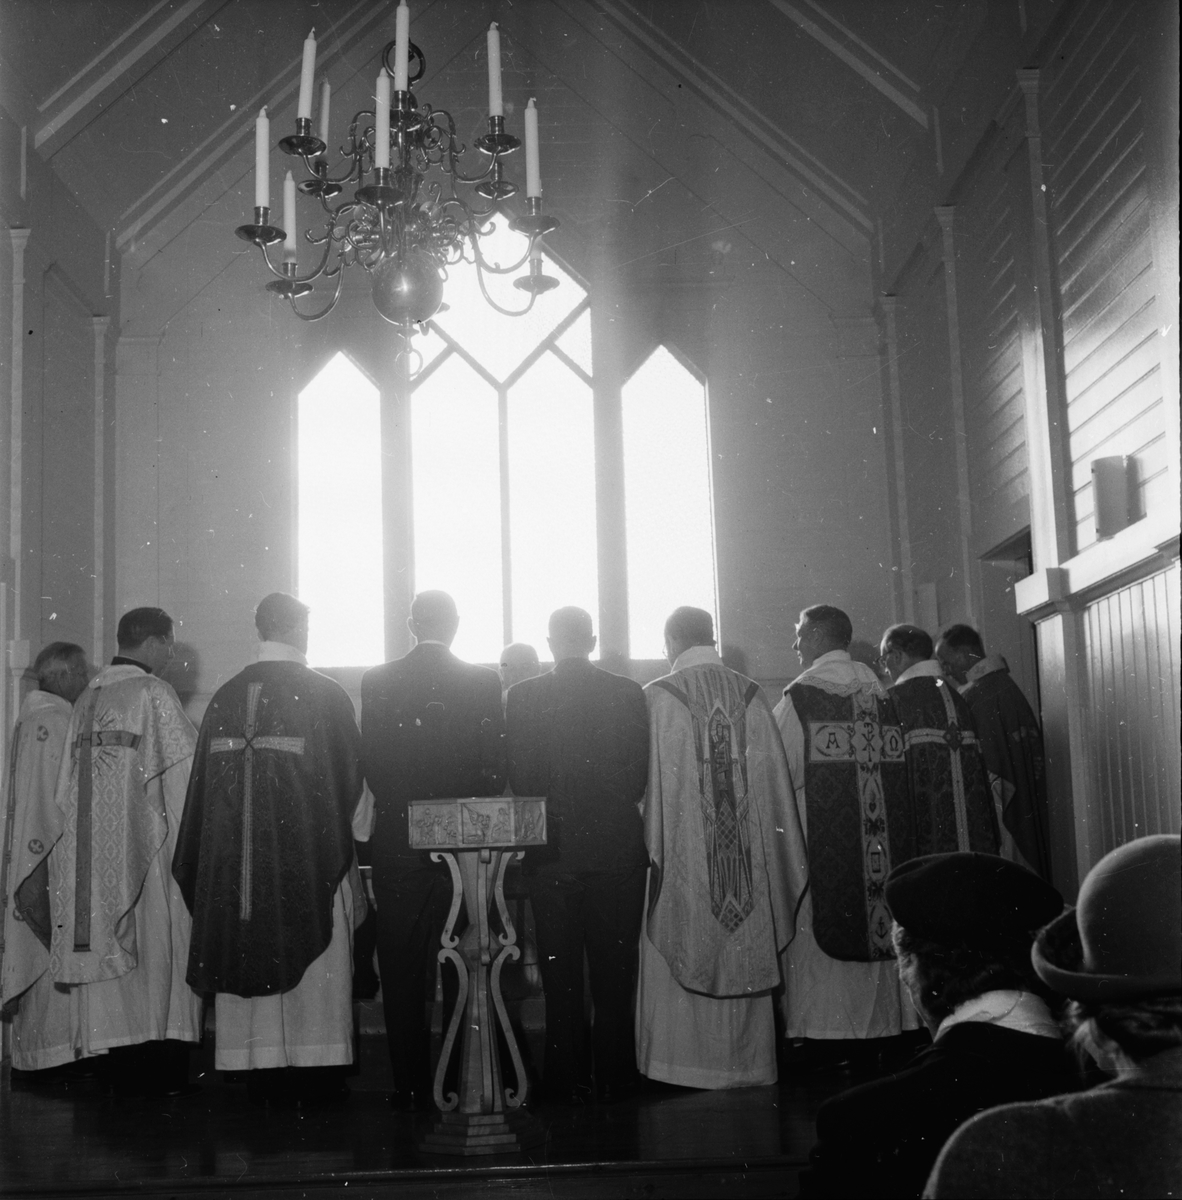 Återinvigning av kapell.
Axel Westberg 81 år.
Katrineberg 3/11 1957